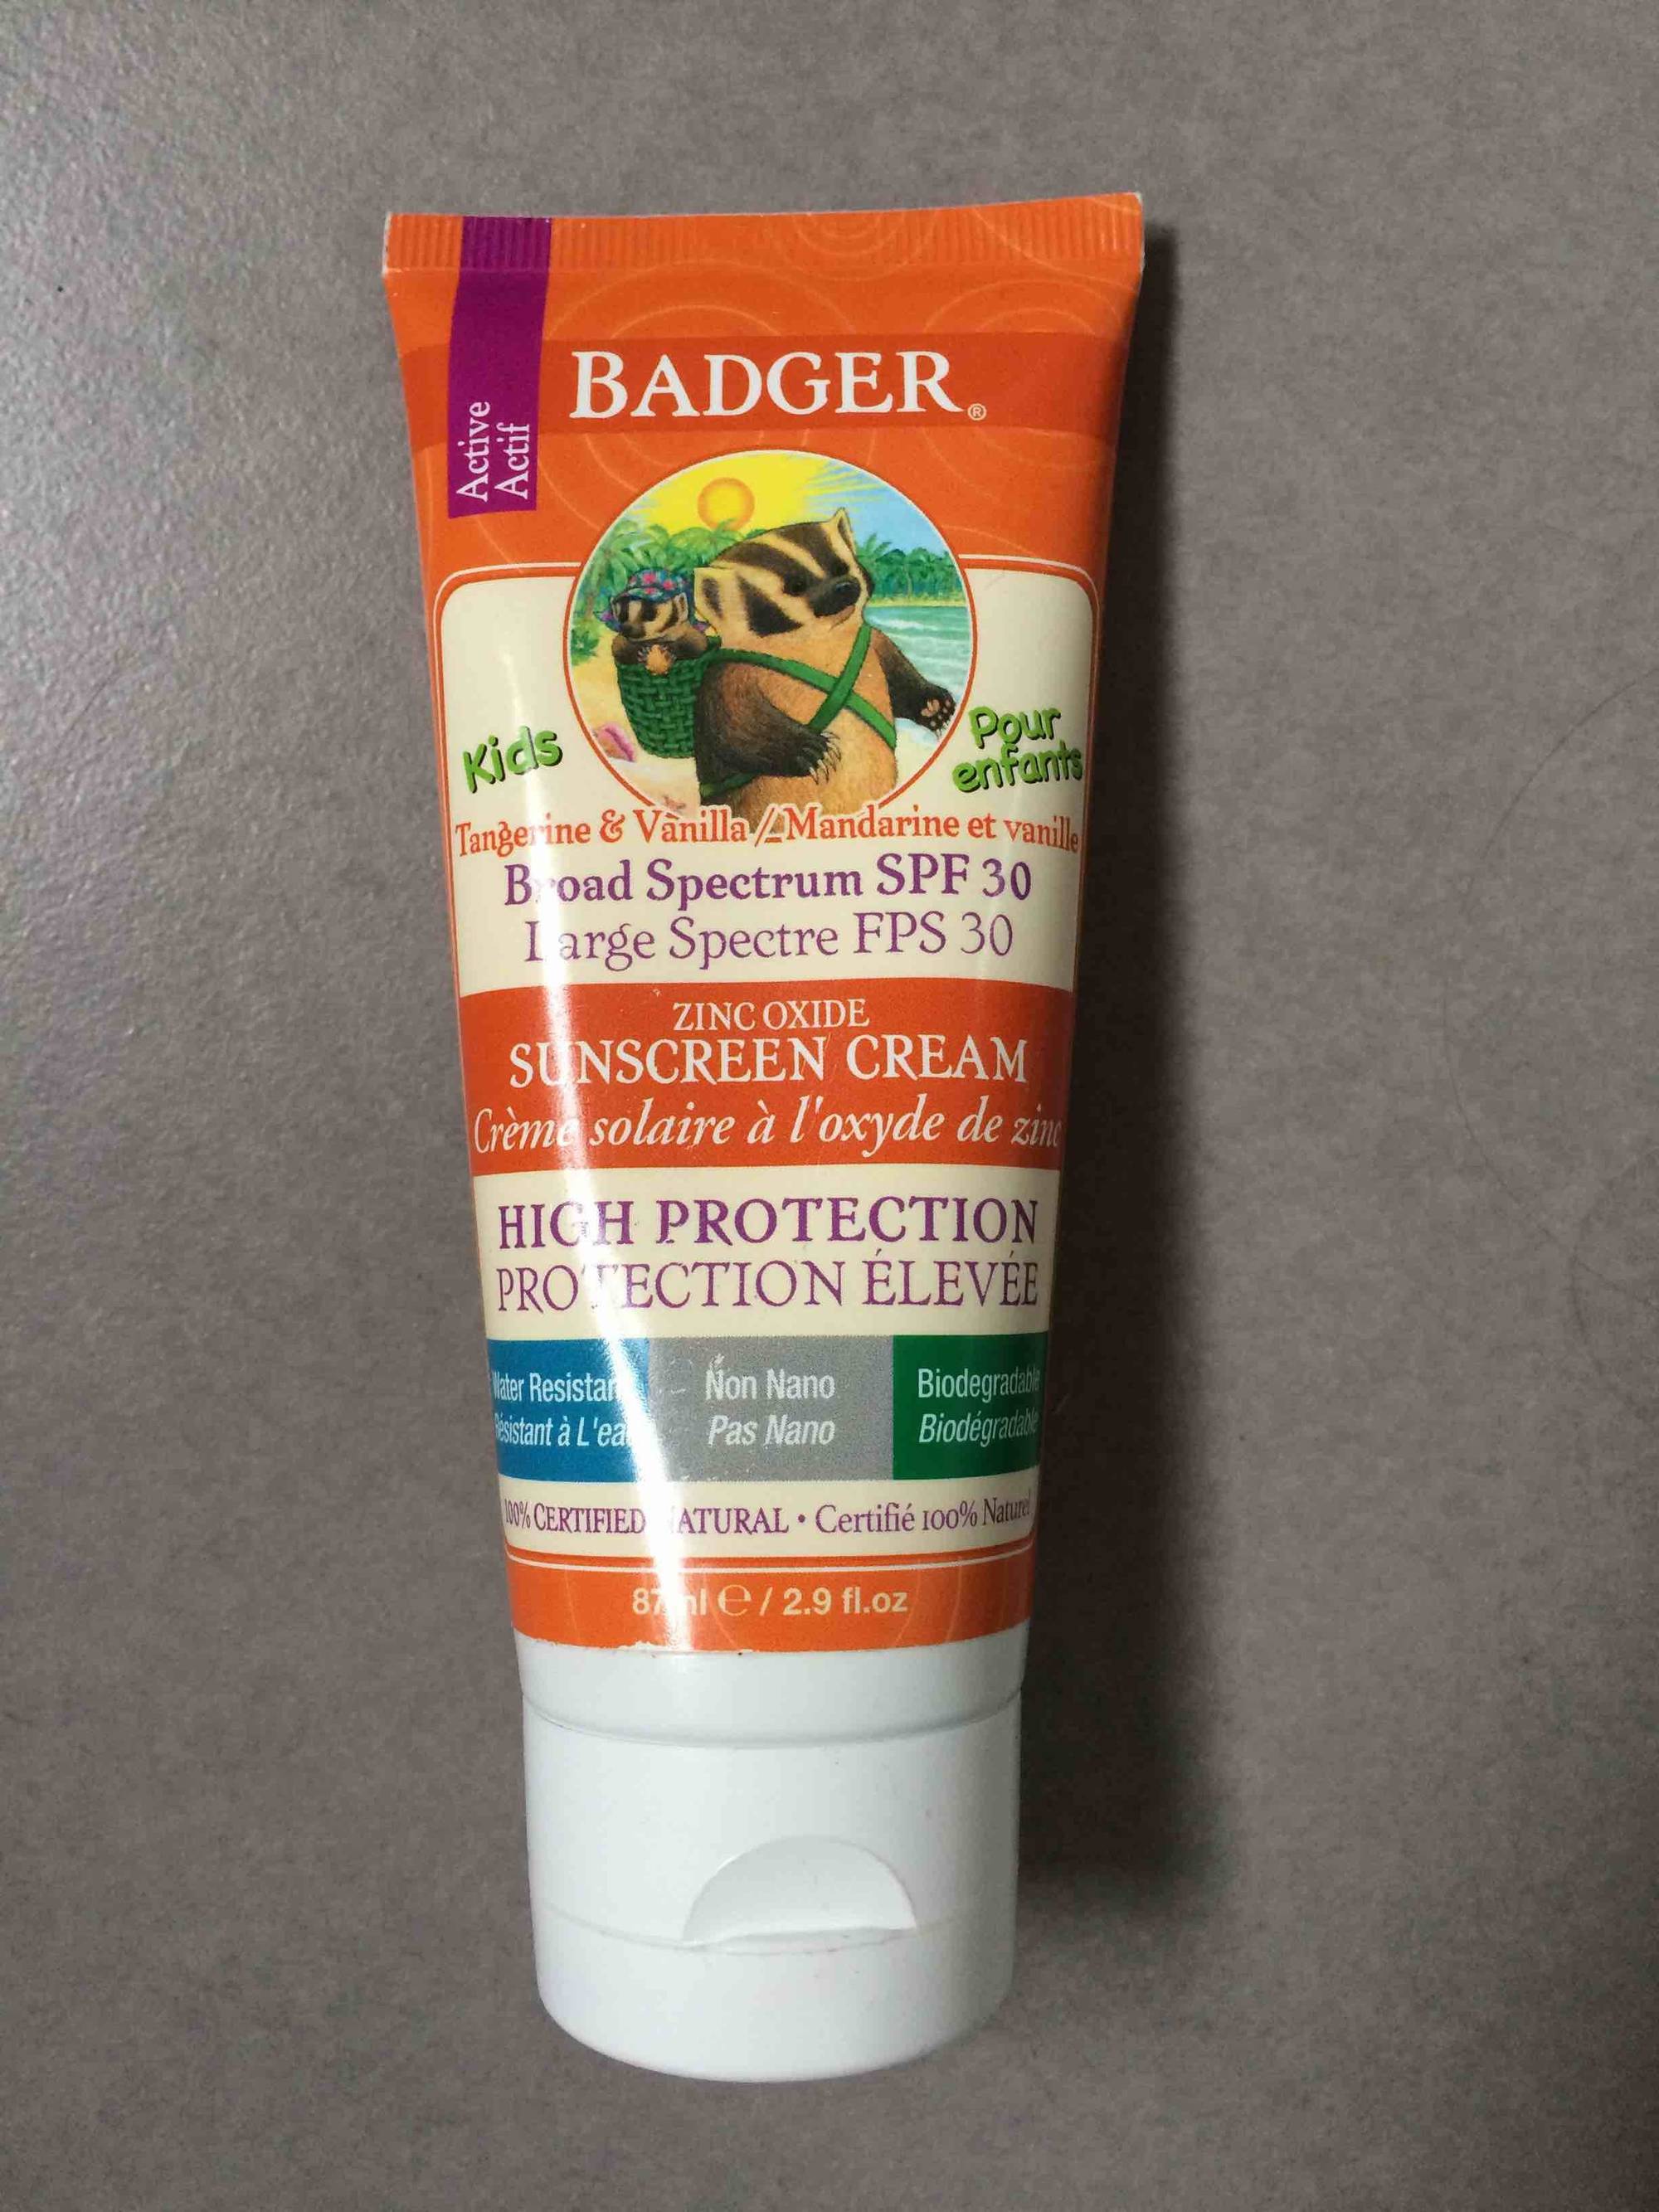 BADGER - Crème solaire à l'oxyde de zinc SPF 30